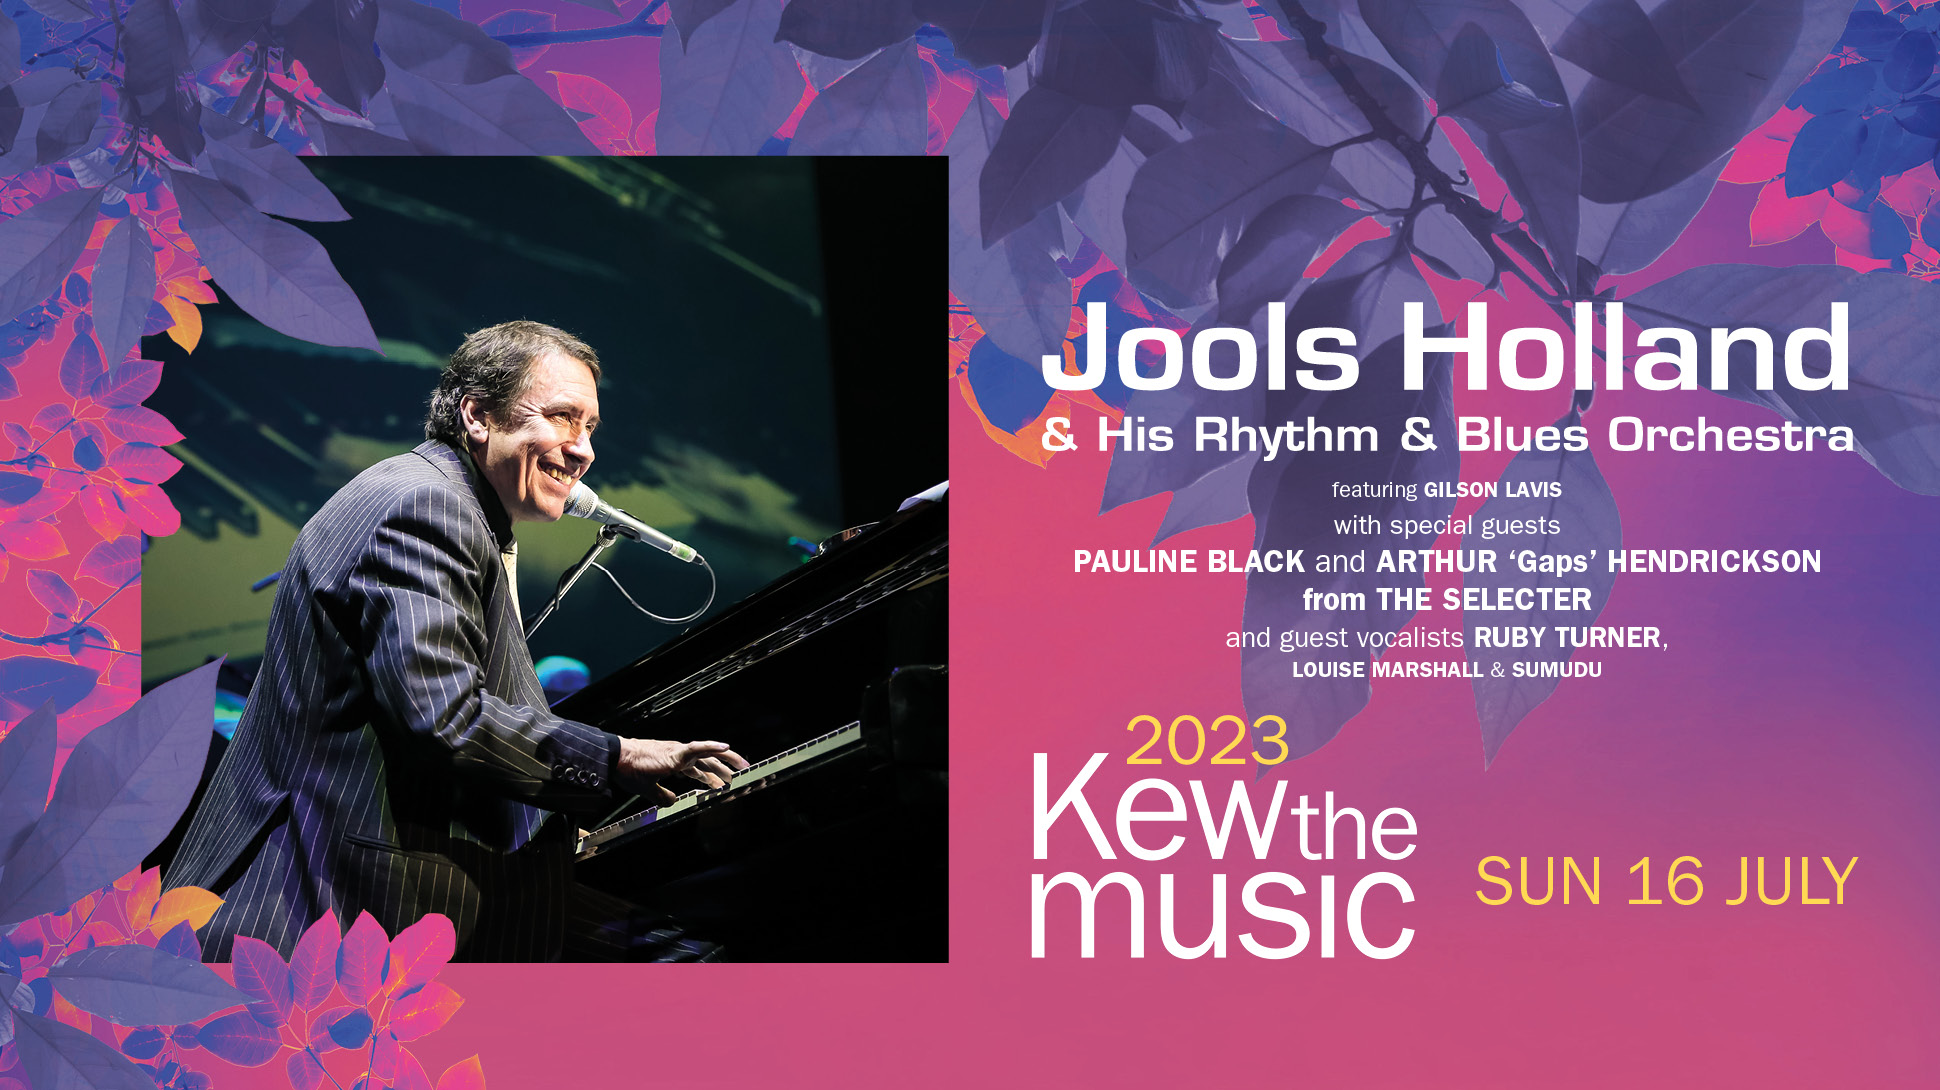 Jools Holland & his Rhythm & Blues Orchestra at Kew the Music 2023, Sunday 16 July